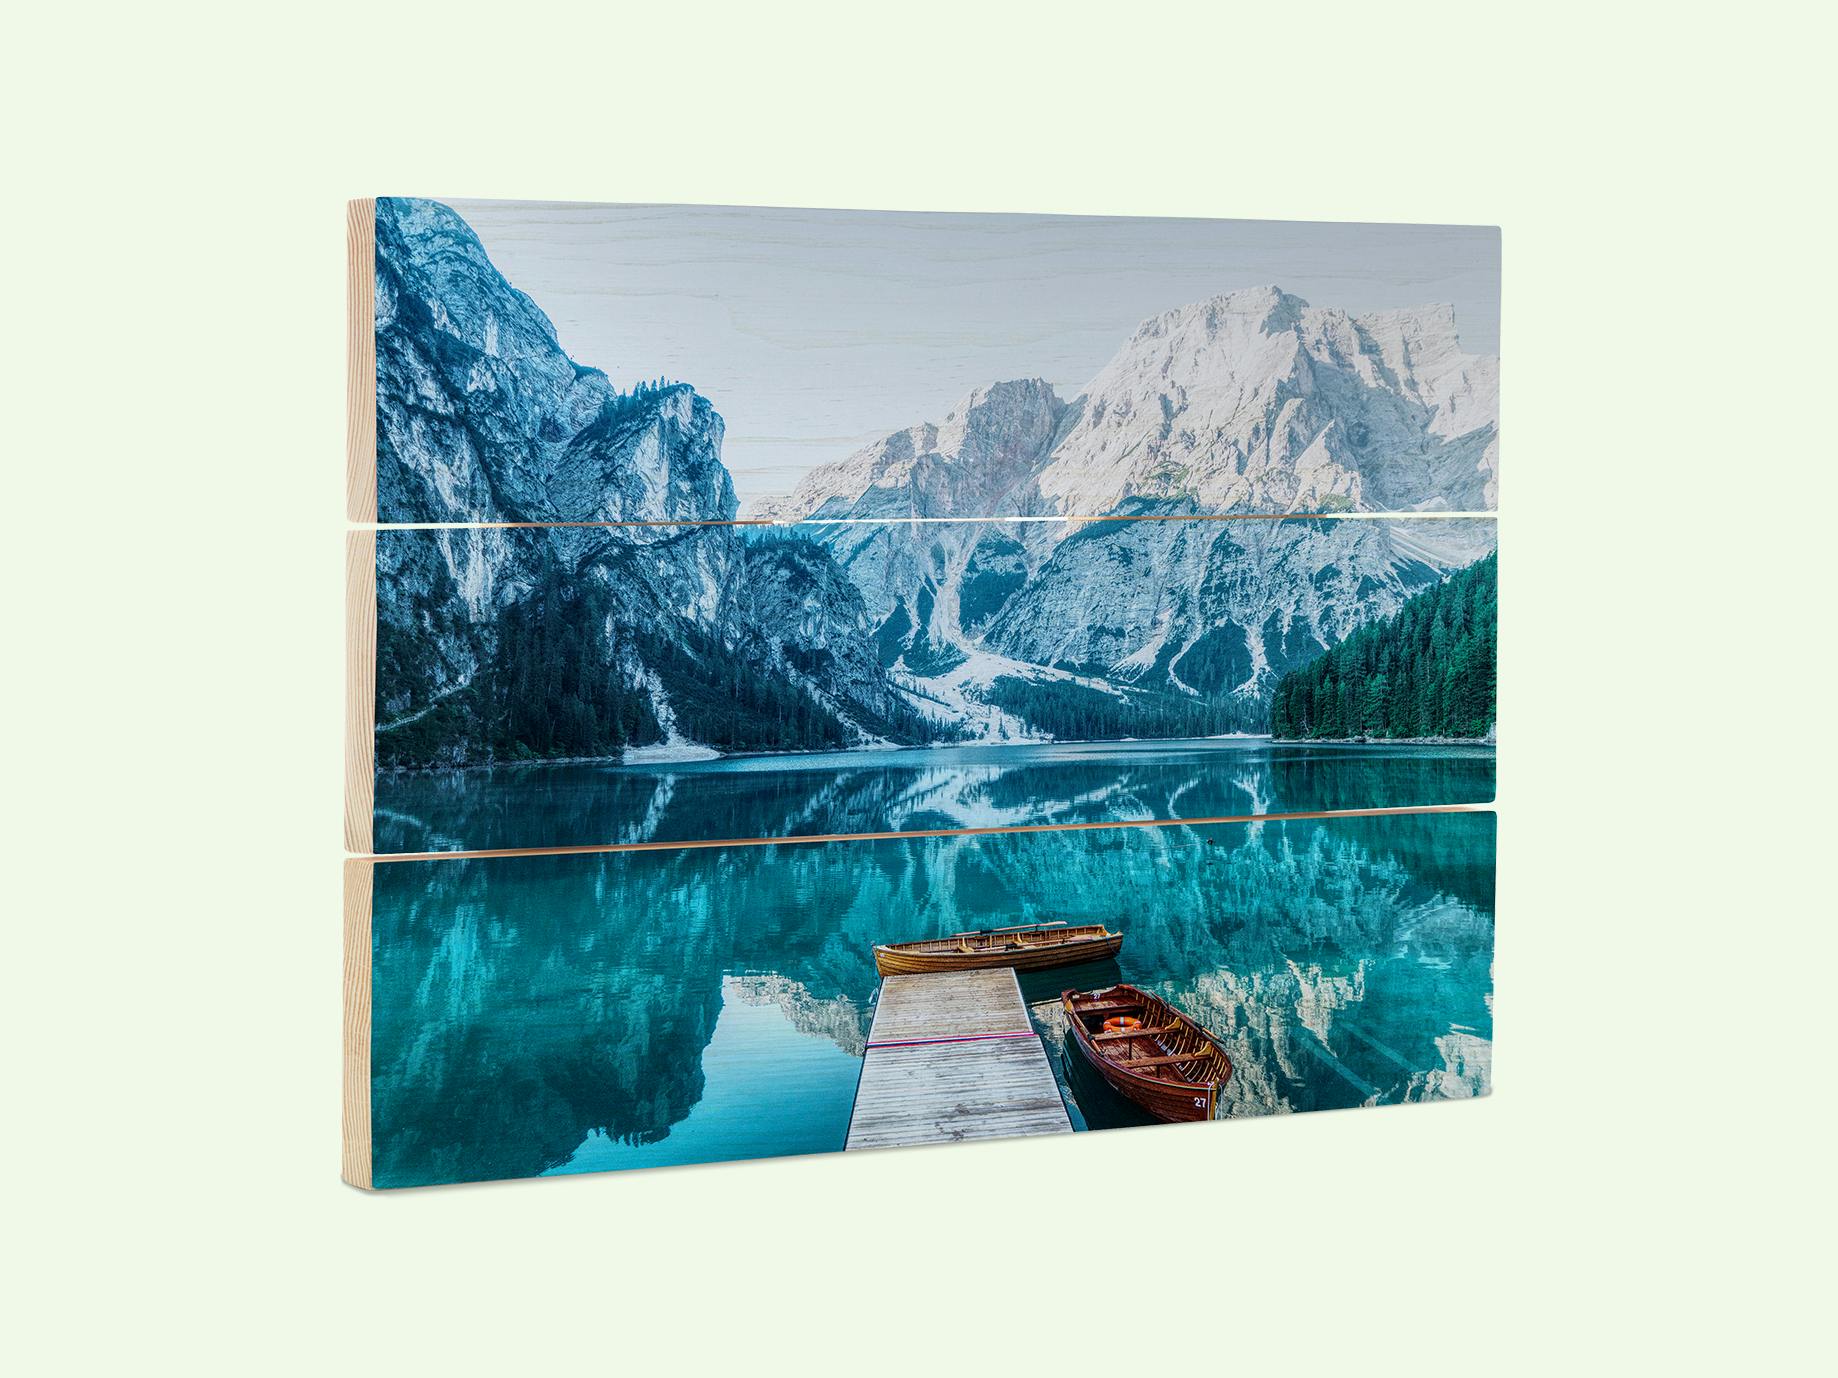 Tableau photo sur bois avec une photo de paysage hivernal